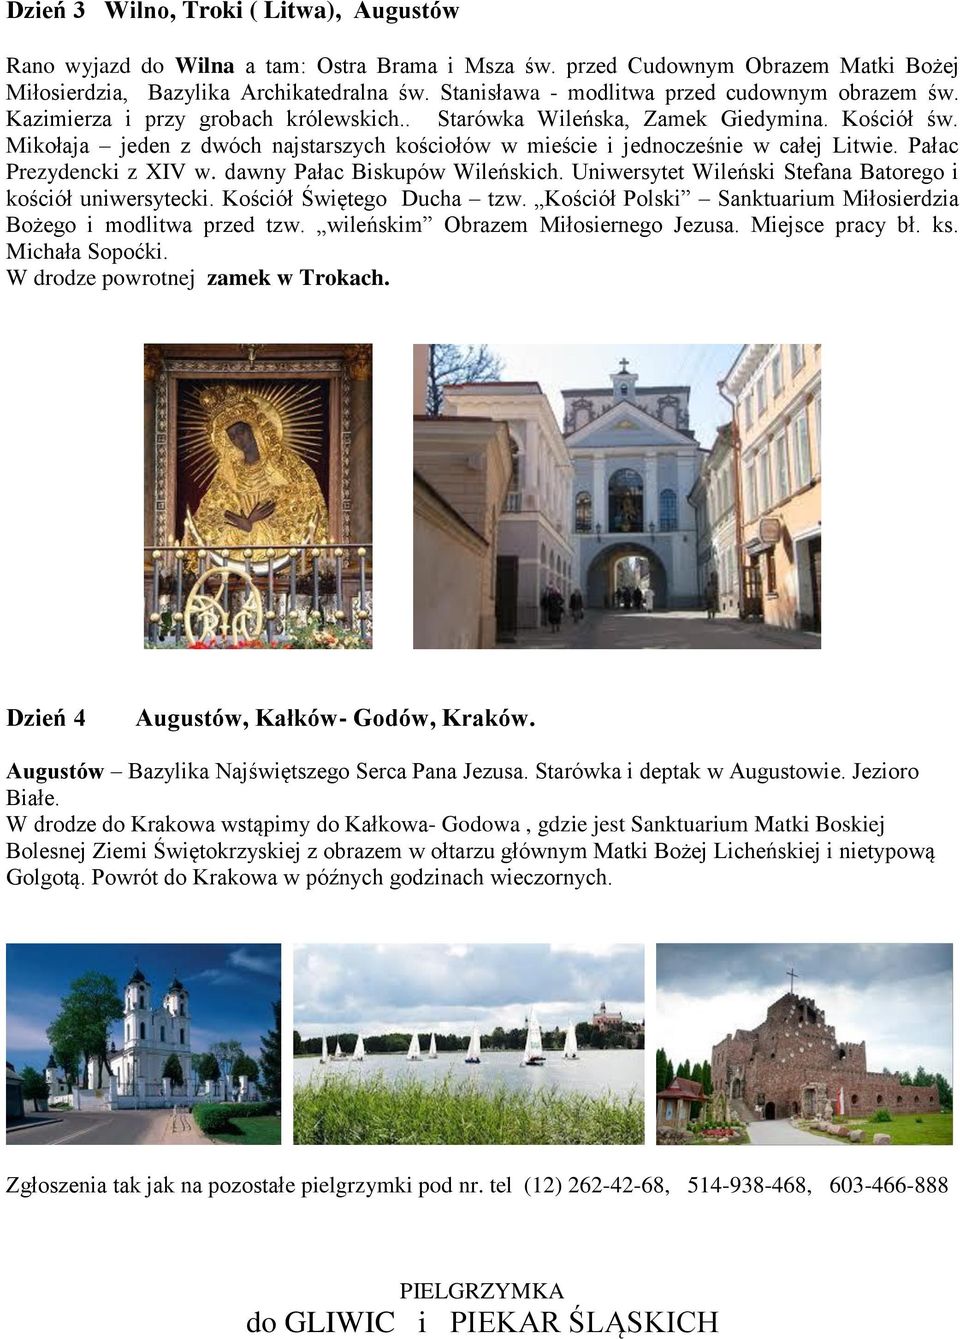 Mikołaja jeden z dwóch najstarszych kościołów w mieście i jednocześnie w całej Litwie. Pałac Prezydencki z XIV w. dawny Pałac Biskupów Wileńskich.